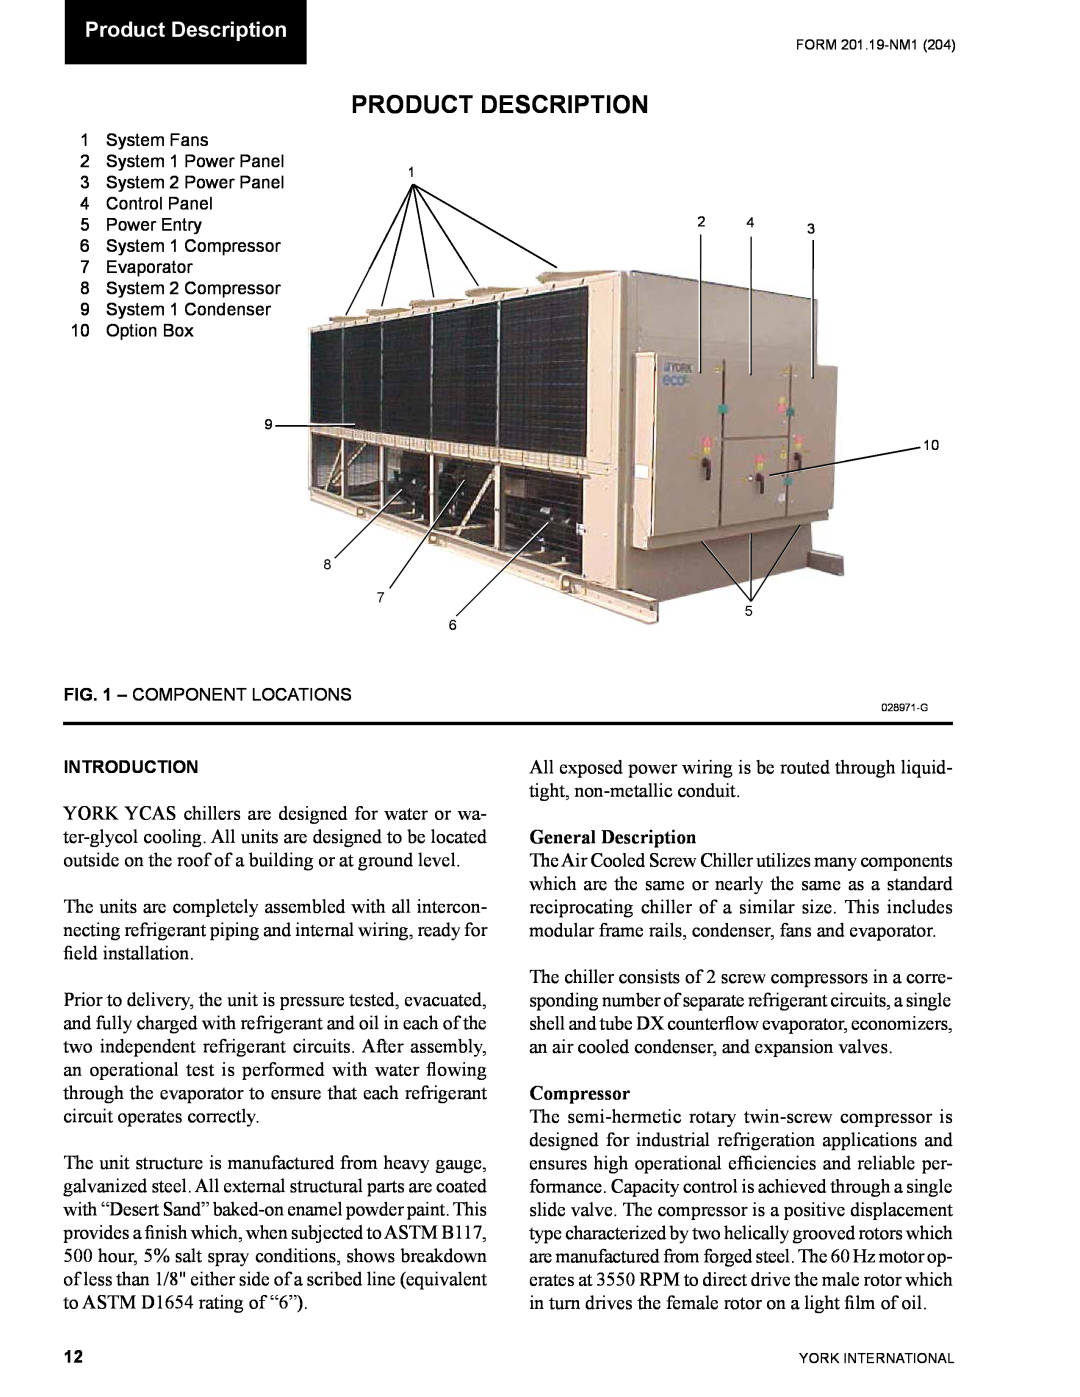 York YCAS0130 manual Product Description, General Description, Compressor 